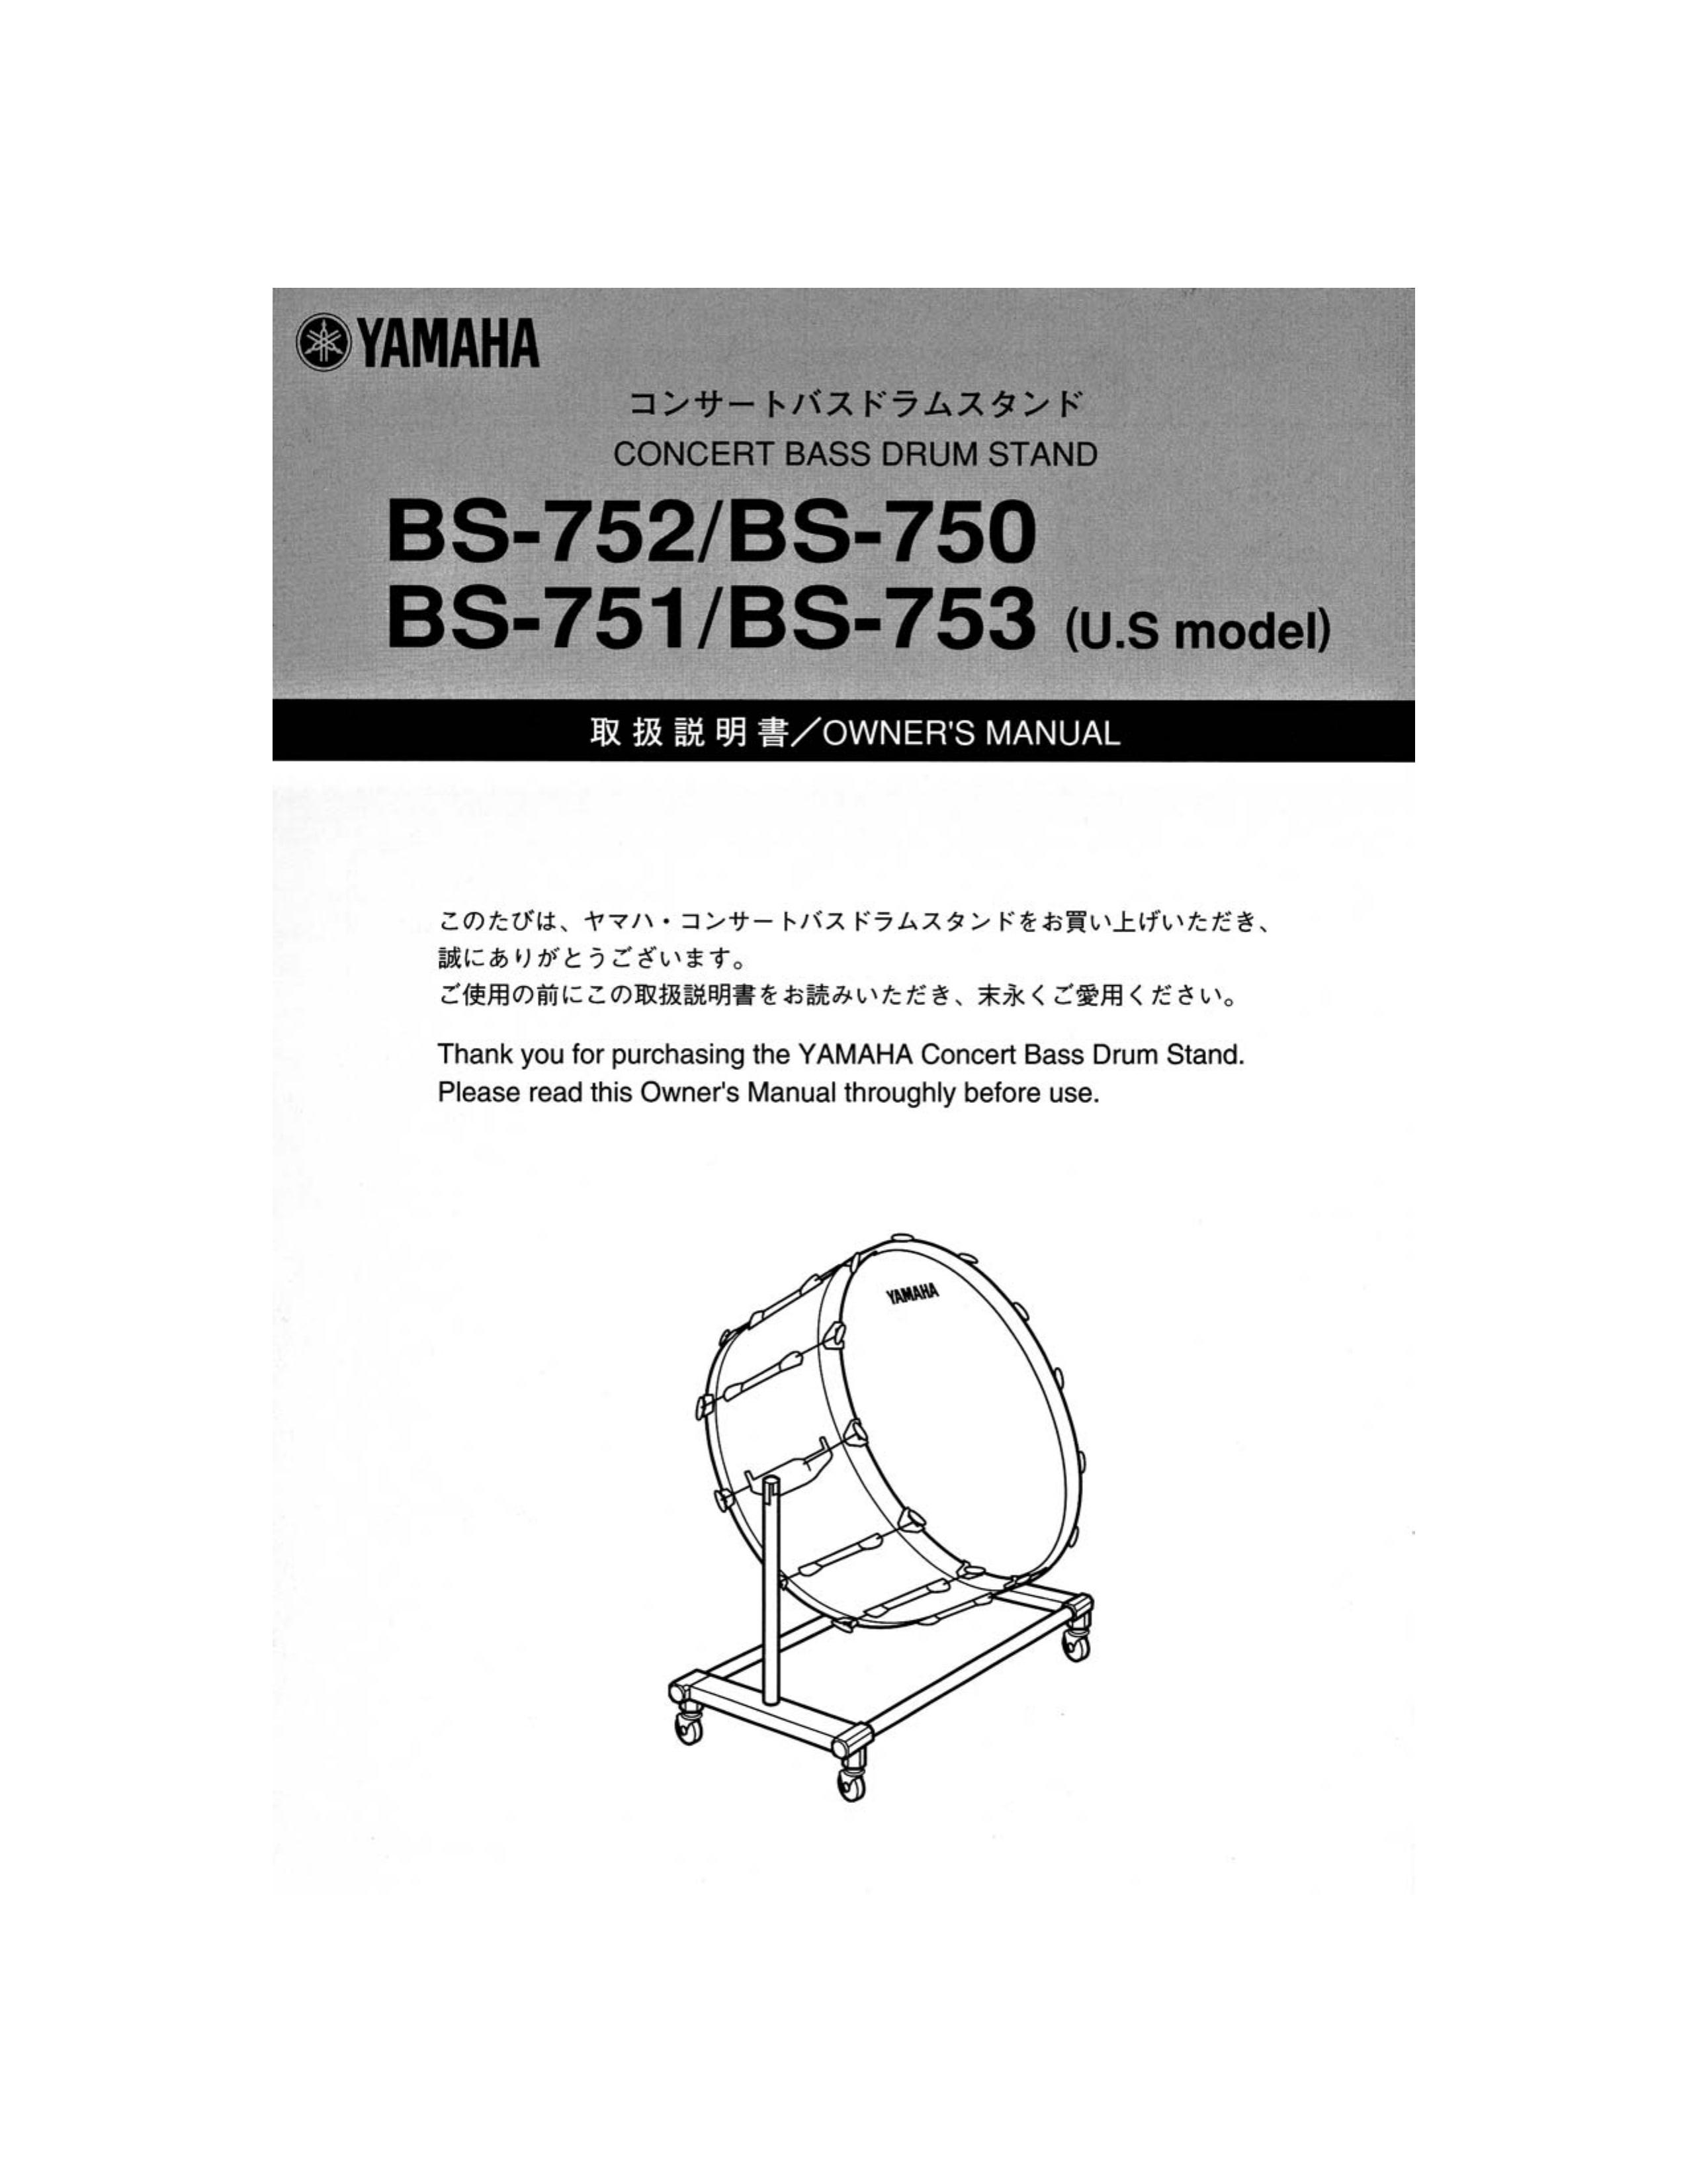 Yamaha BS-751 Drums User Manual